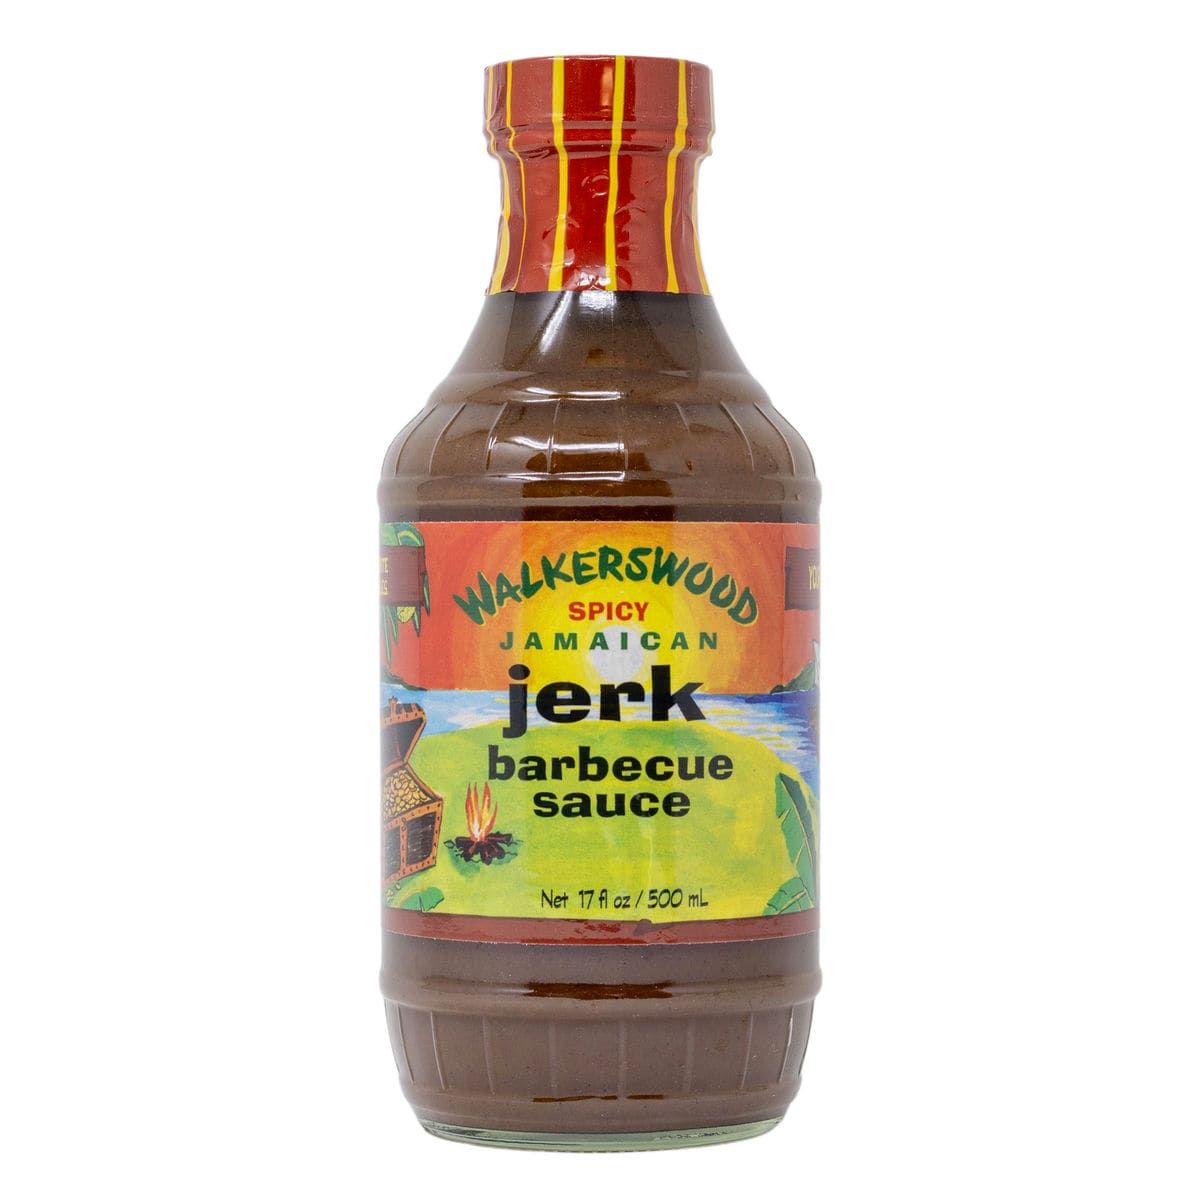 Walkerswood Spicy Jamaican Jerk BBQ Sauce